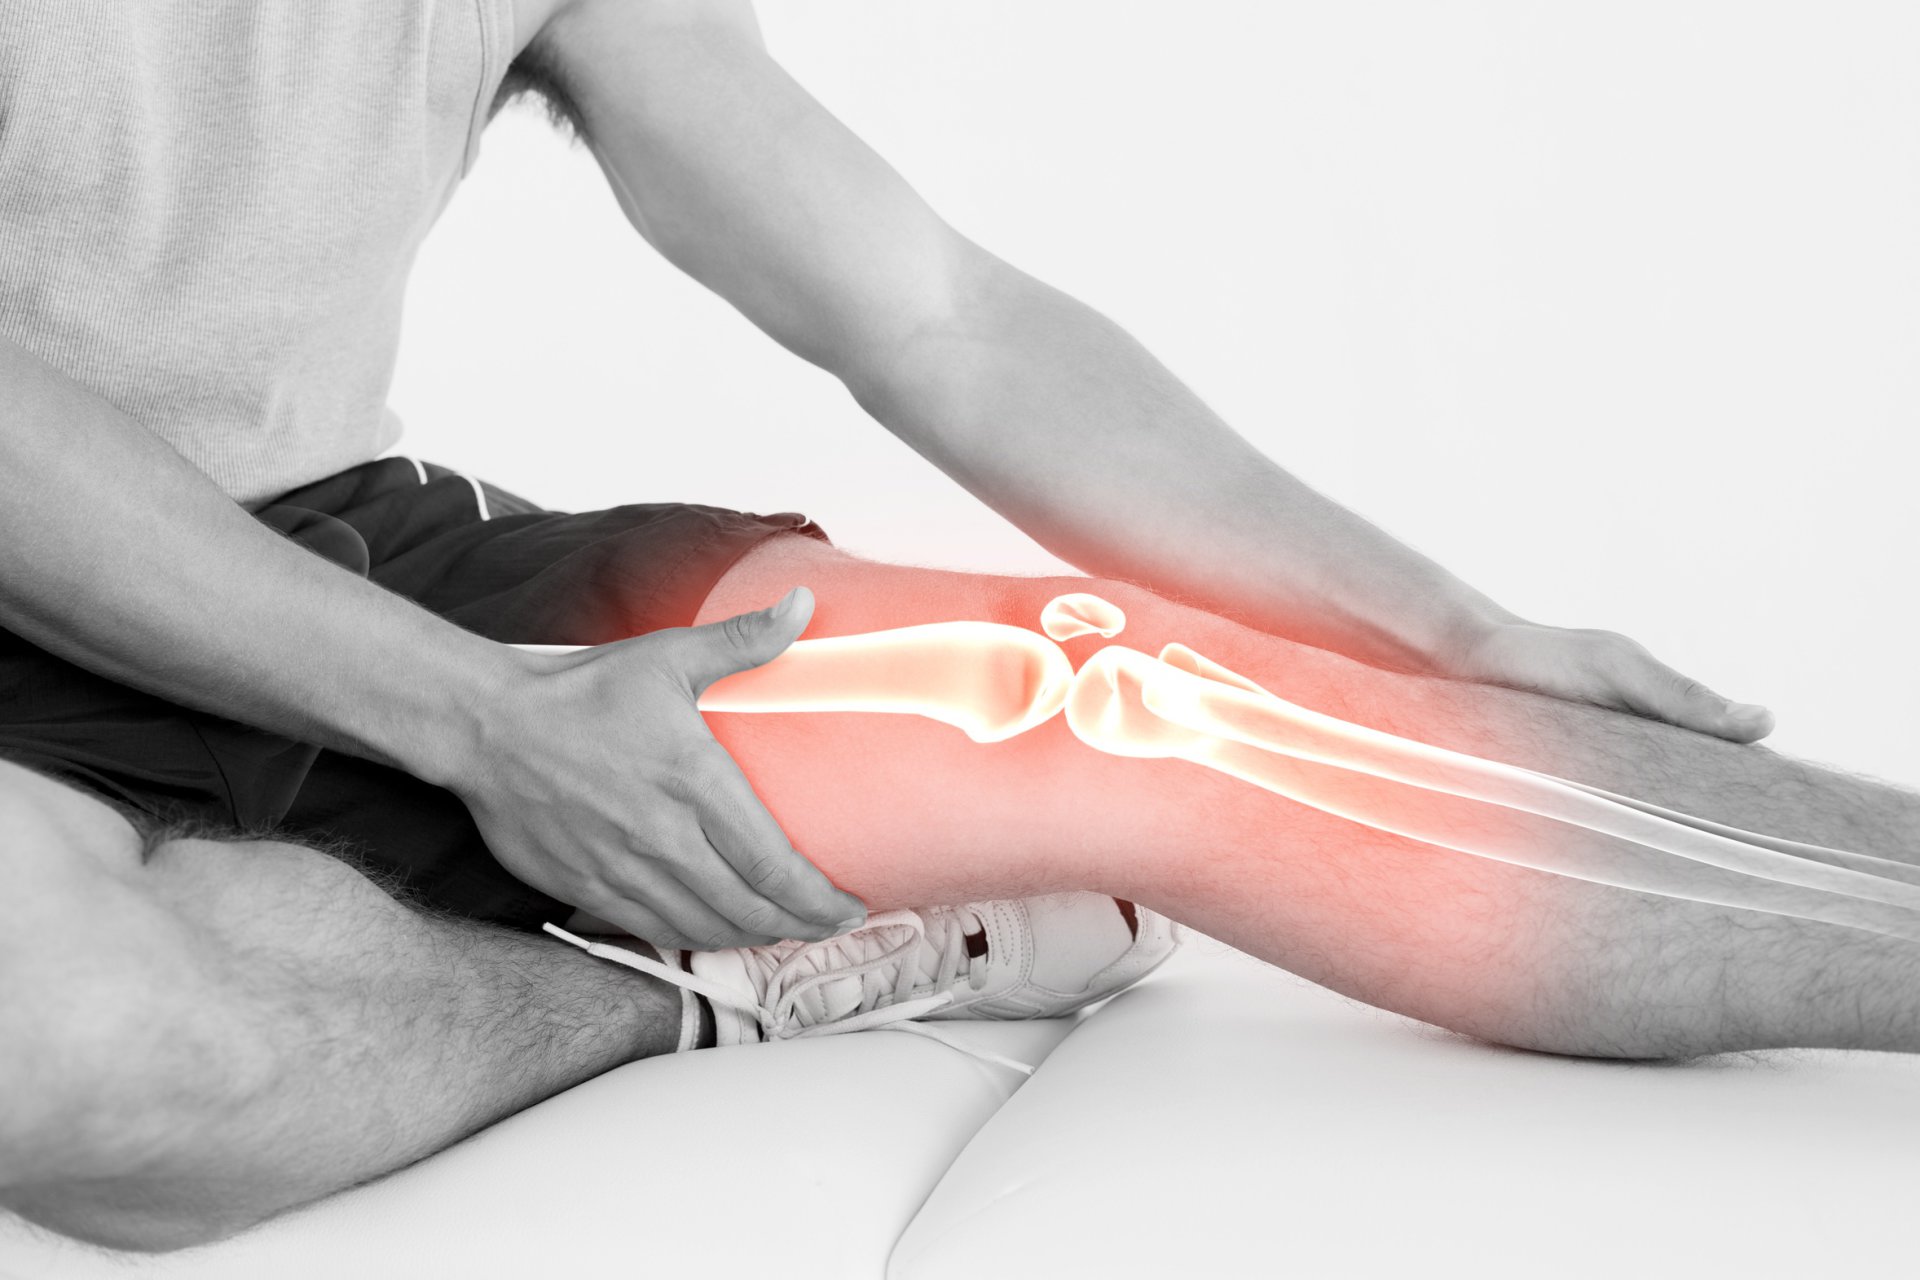 šiuolaikiniai metodai gydant osteochondrozę liaudies gynimo priemones badavimo su osteoartritu rankas sąnarių